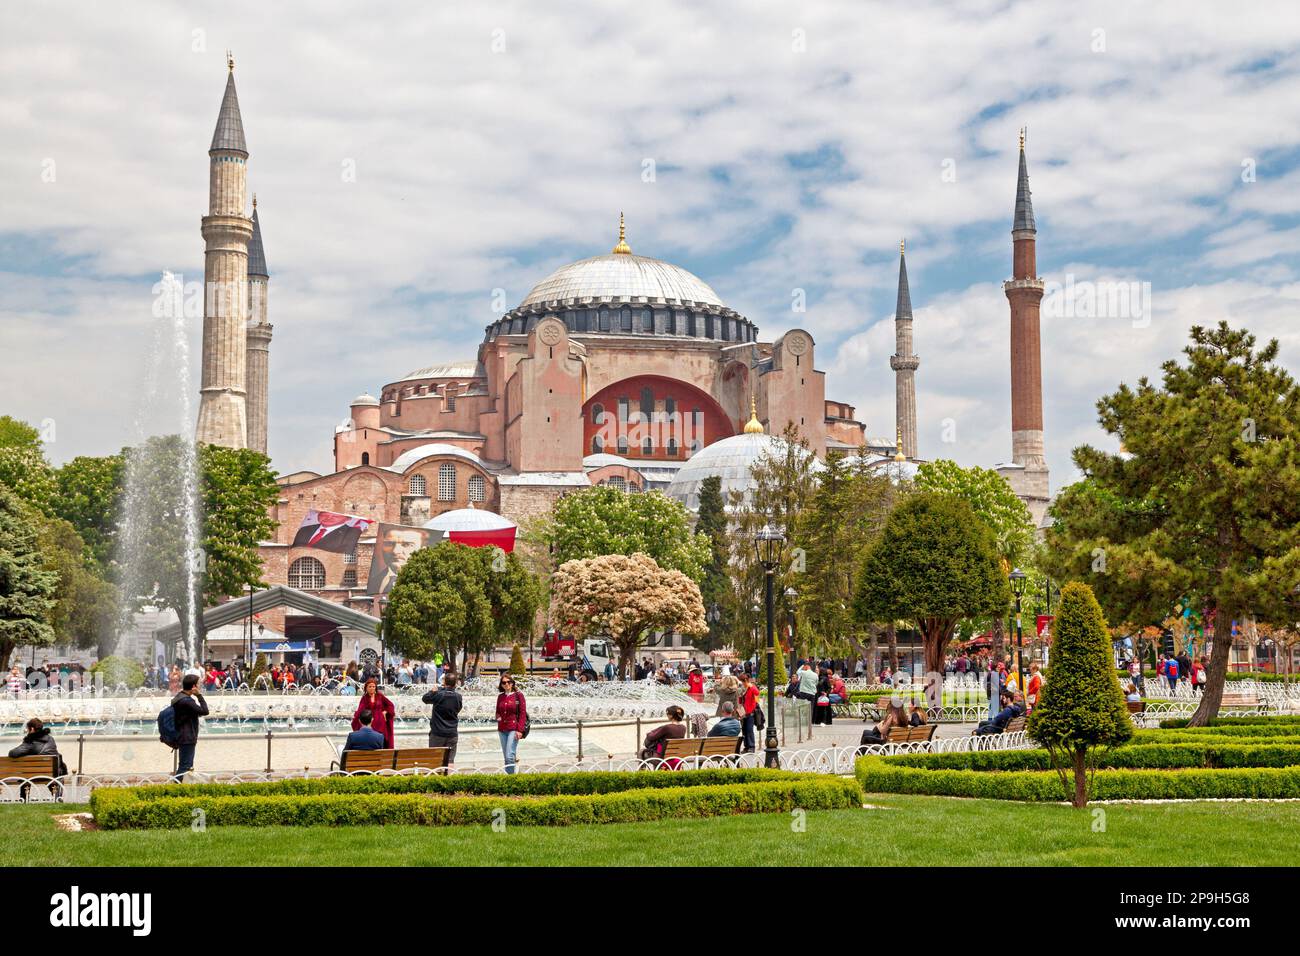 Istanbul, Turchia - 09 2019 maggio: La Hagia Sophia è l'ex cattedrale patriarcale cristiana greco-ortodossa, più tardi una moschea imperiale ottomana e no Foto Stock